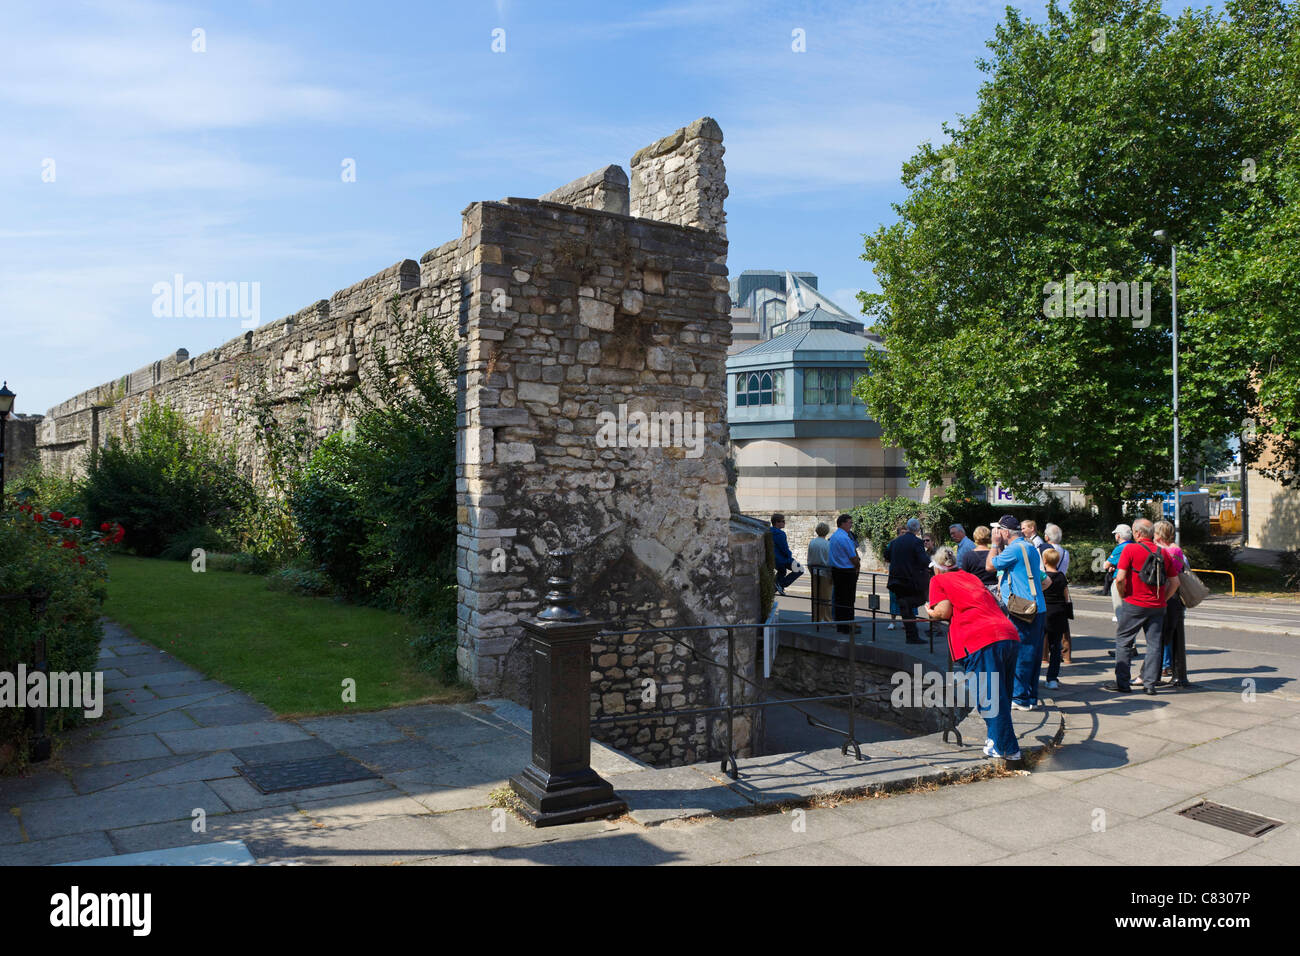 Besucher auf einen Rundgang durch die alte Stadtmauer in der Nähe von Schlossplatz, Southampton, Hampshire, England, UK Stockfoto